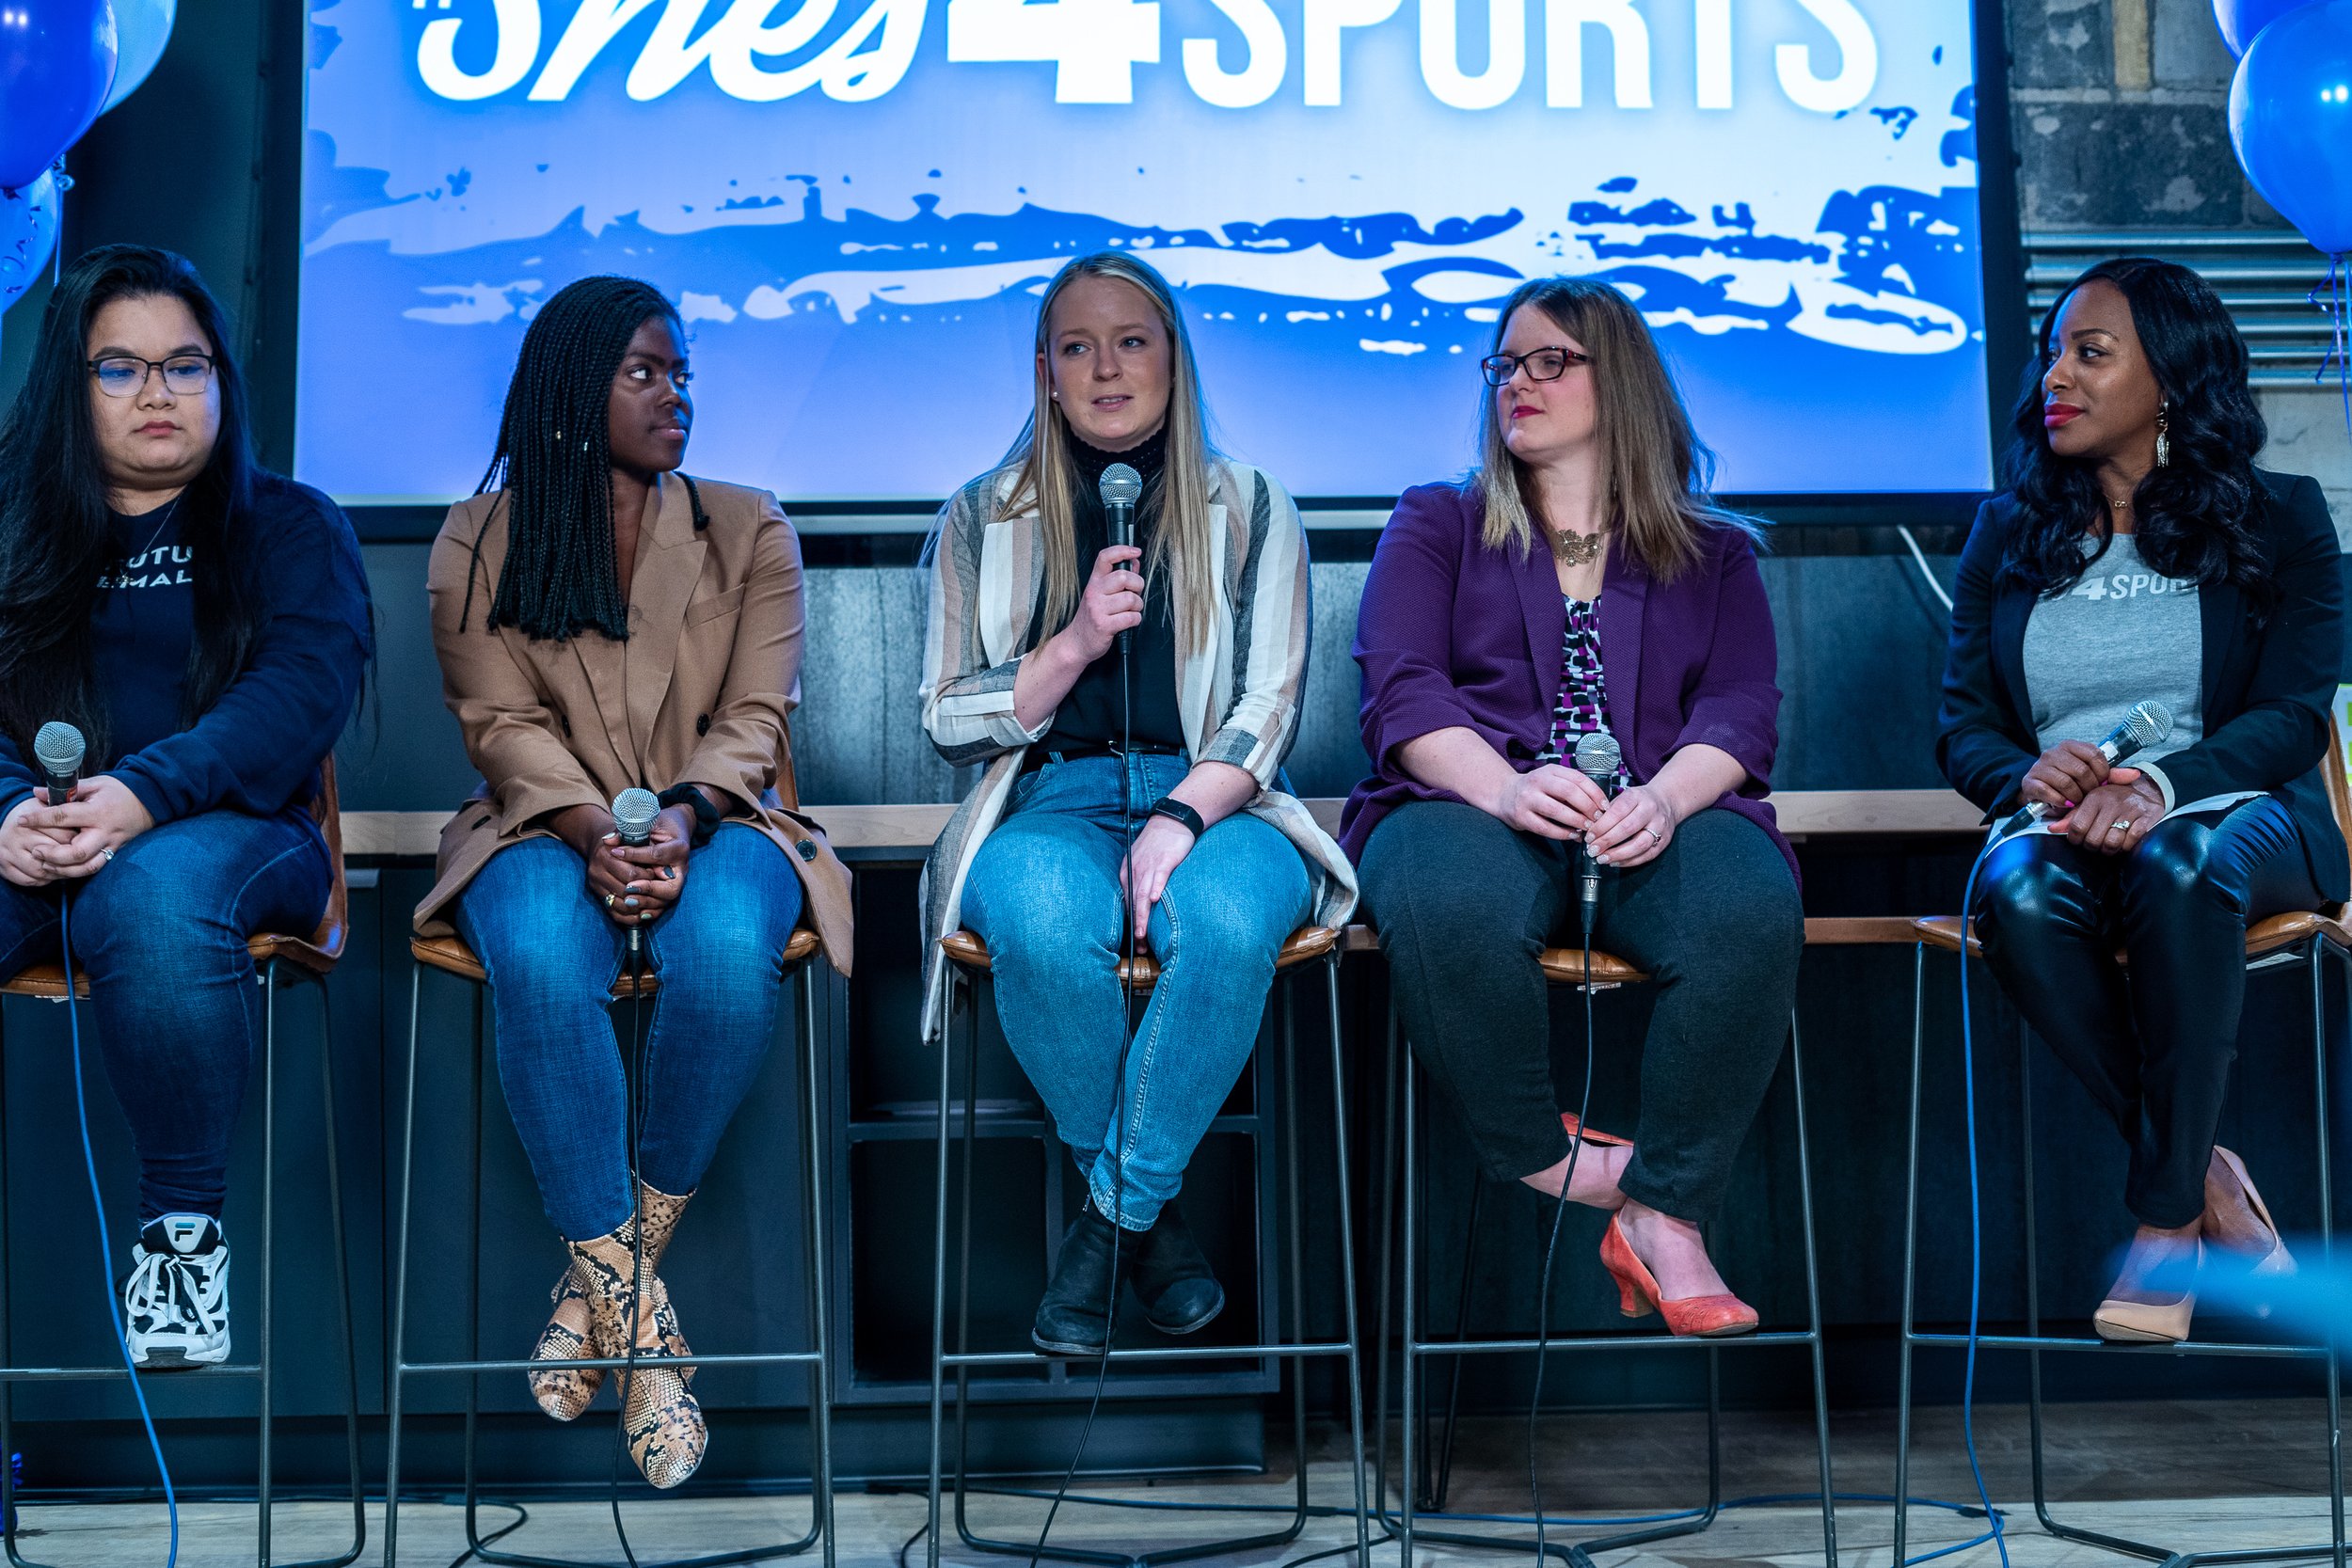 2020.03.11 � She's 4 Sports - Women In Tech @thecreadive (66 of 86).jpg